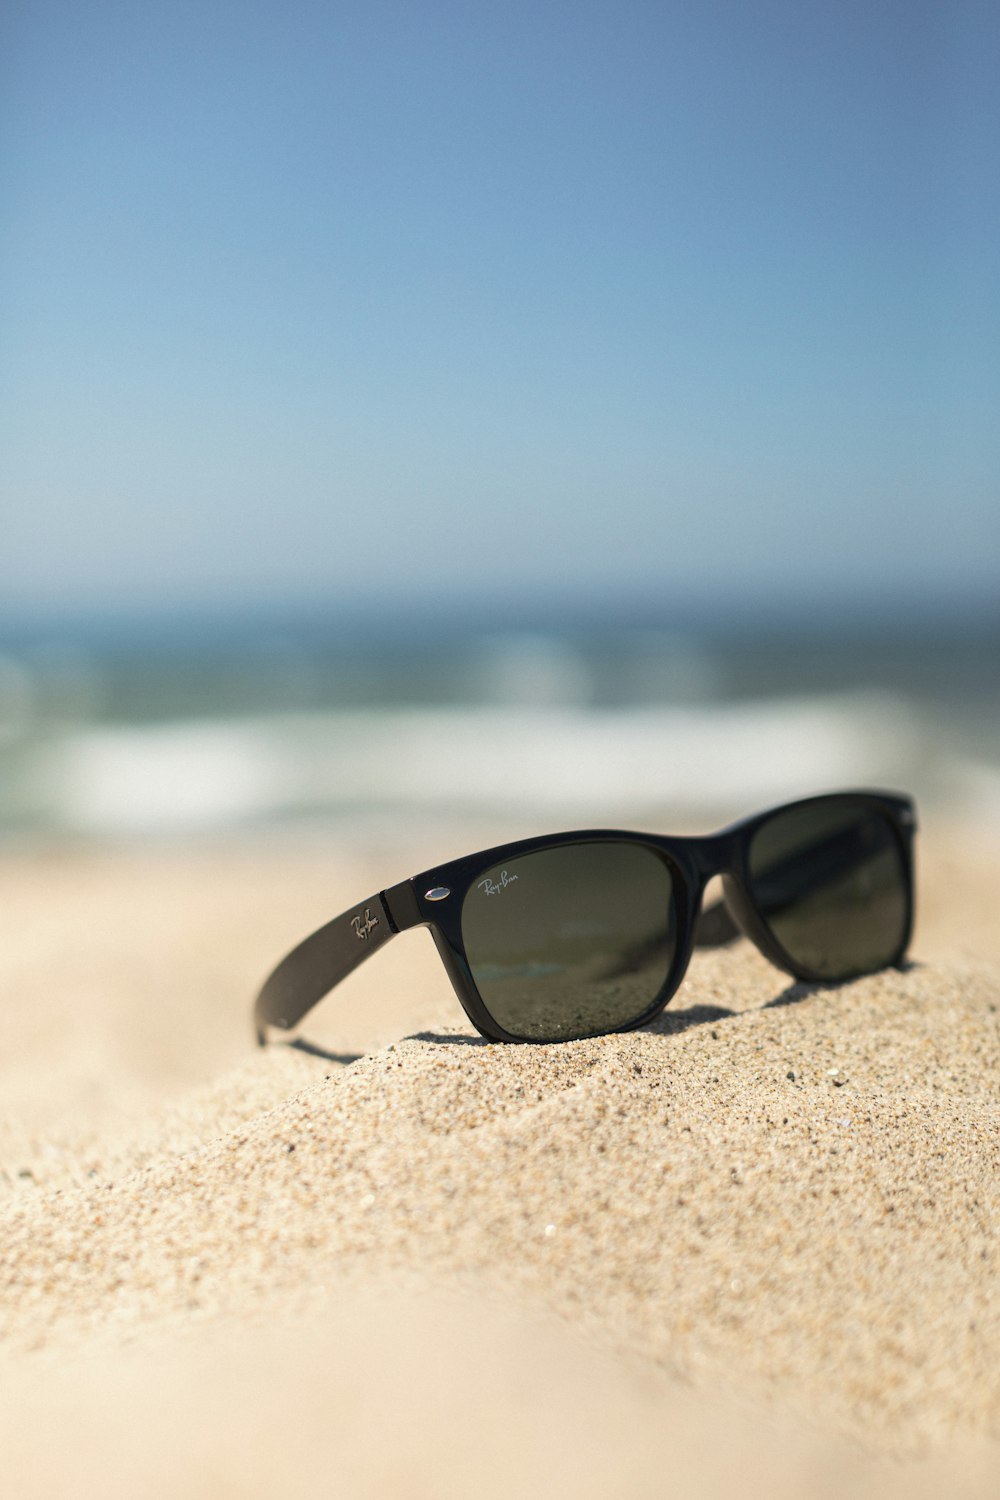 Gafas de sol negras estilo wayfarer sobre arena